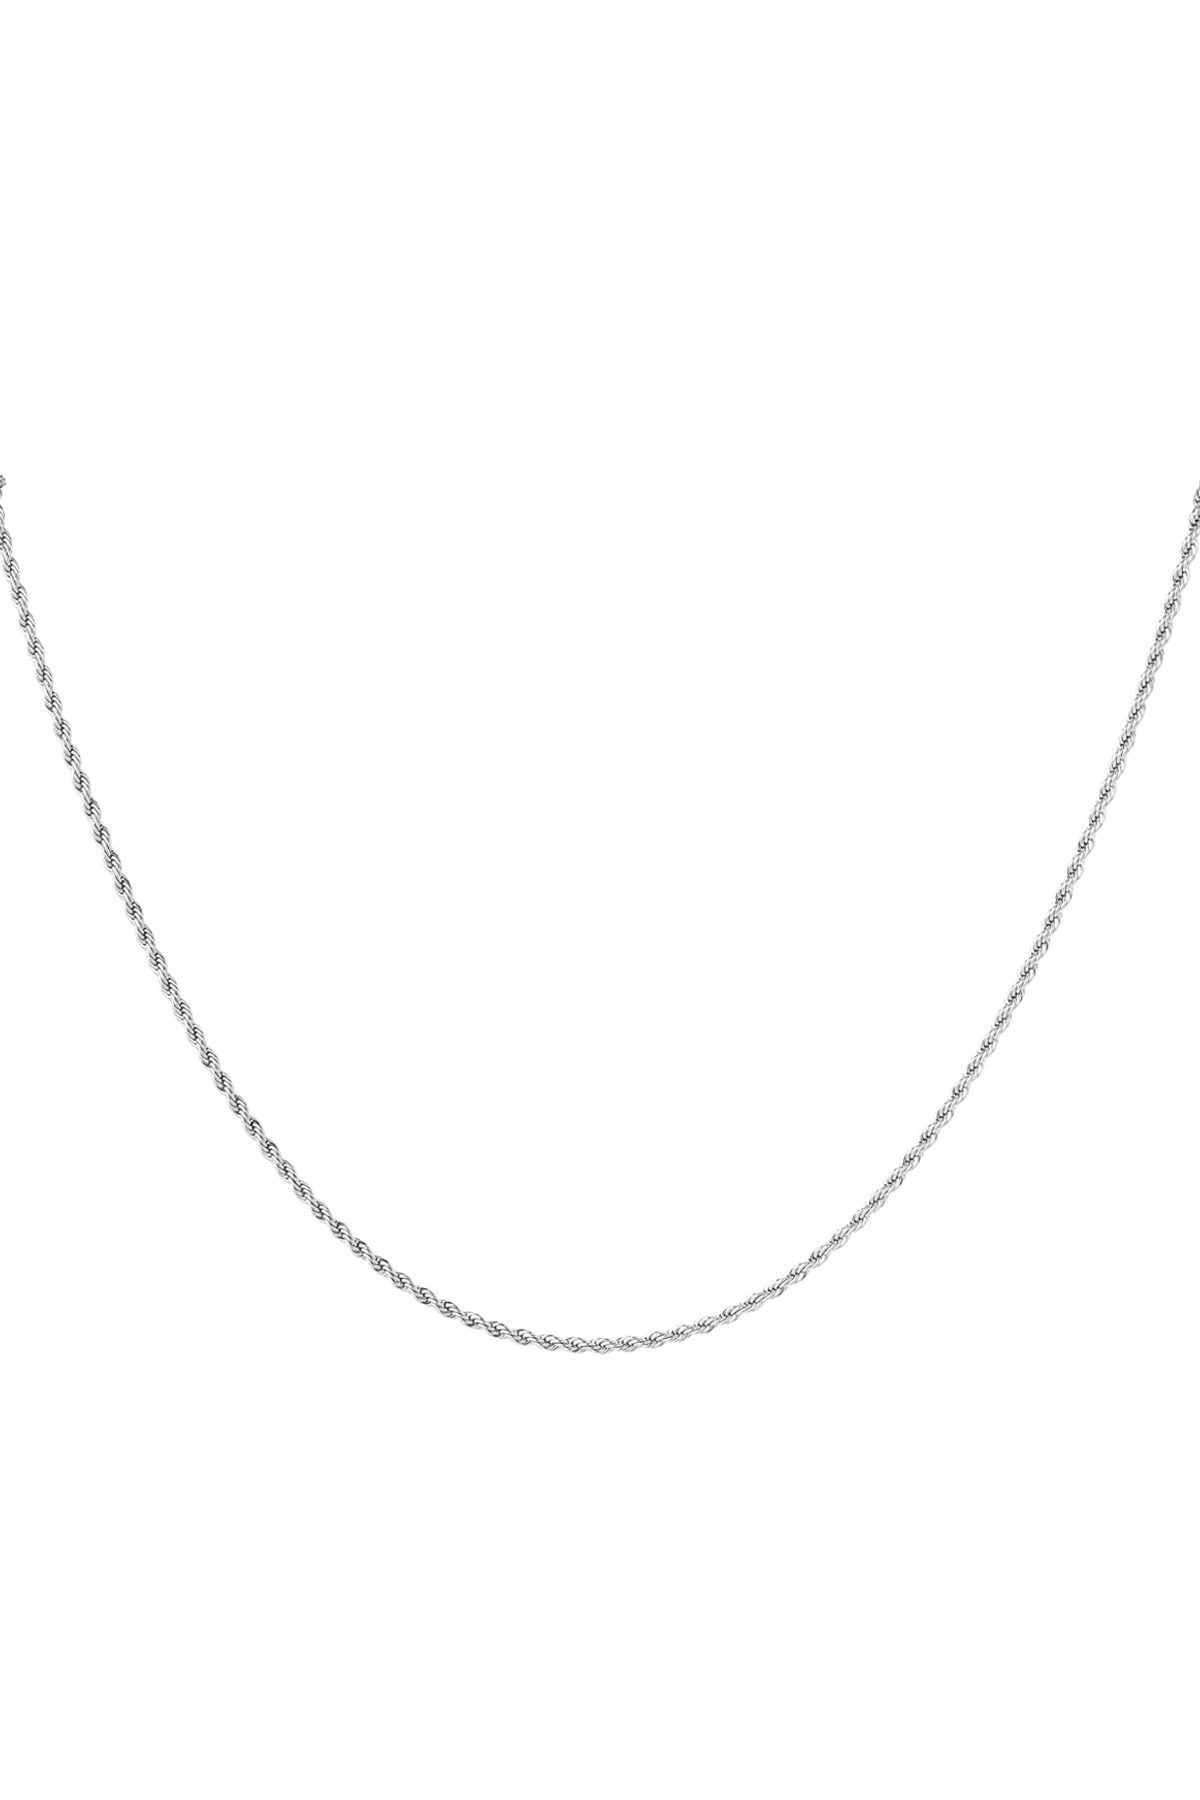 Halskette gedreht dünn - Silber - 2,0MM h5 